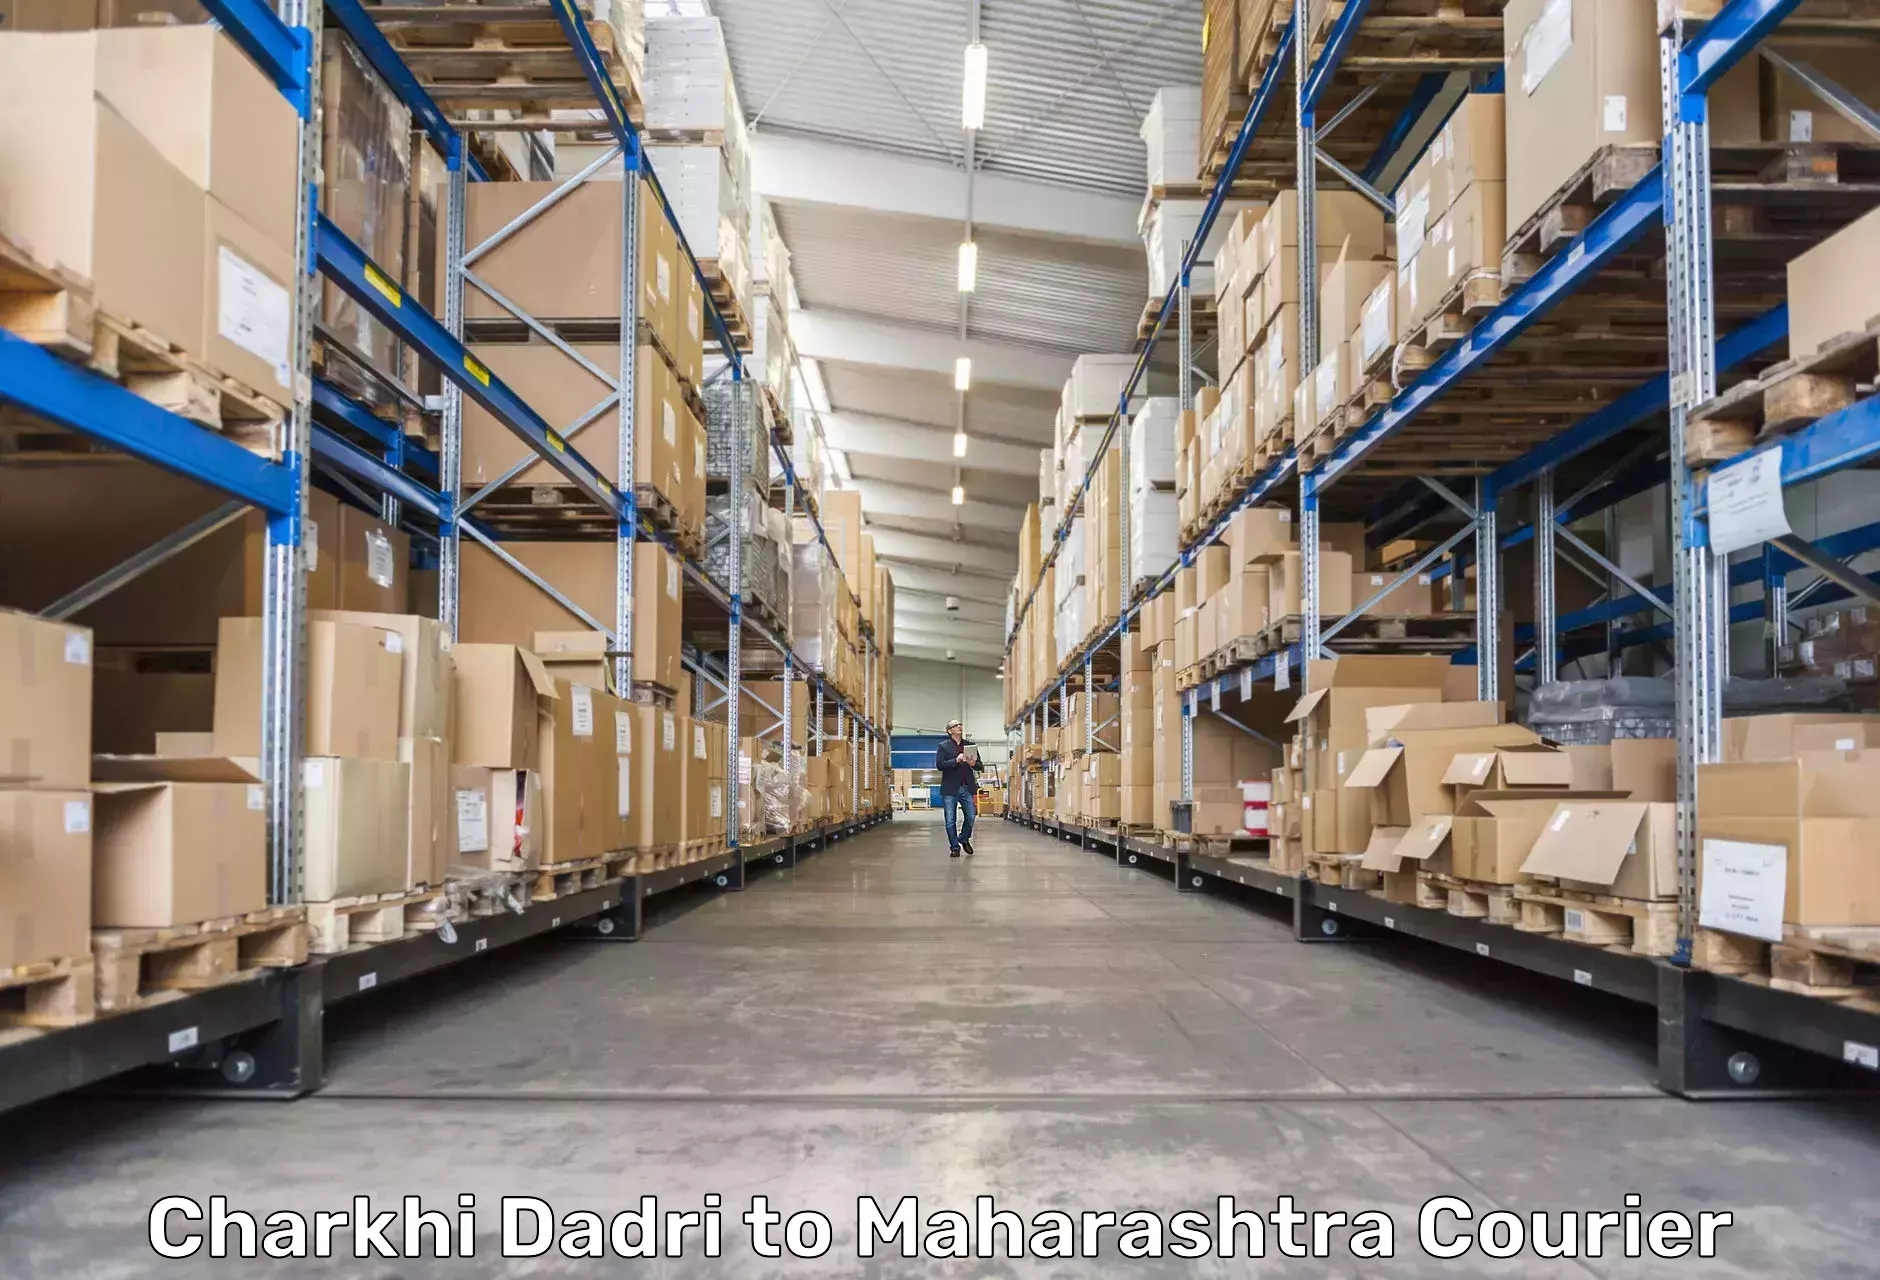 Speedy delivery service Charkhi Dadri to Maharashtra